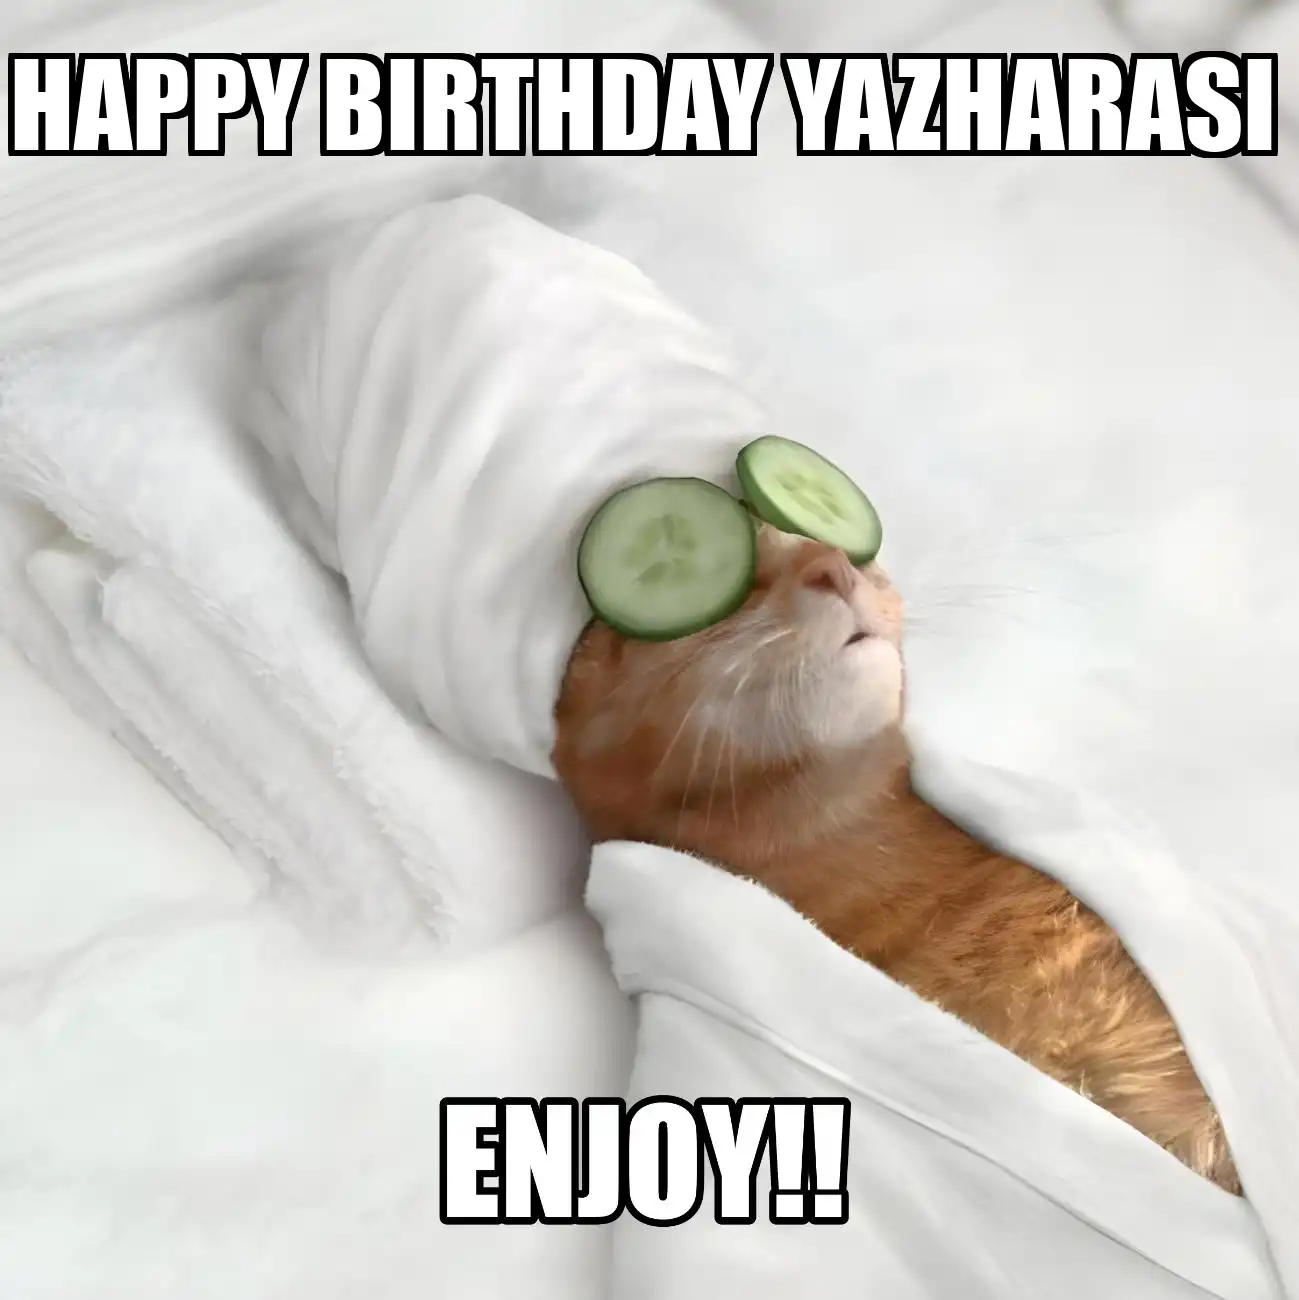 Happy Birthday Yazharasi Enjoy Cat Meme